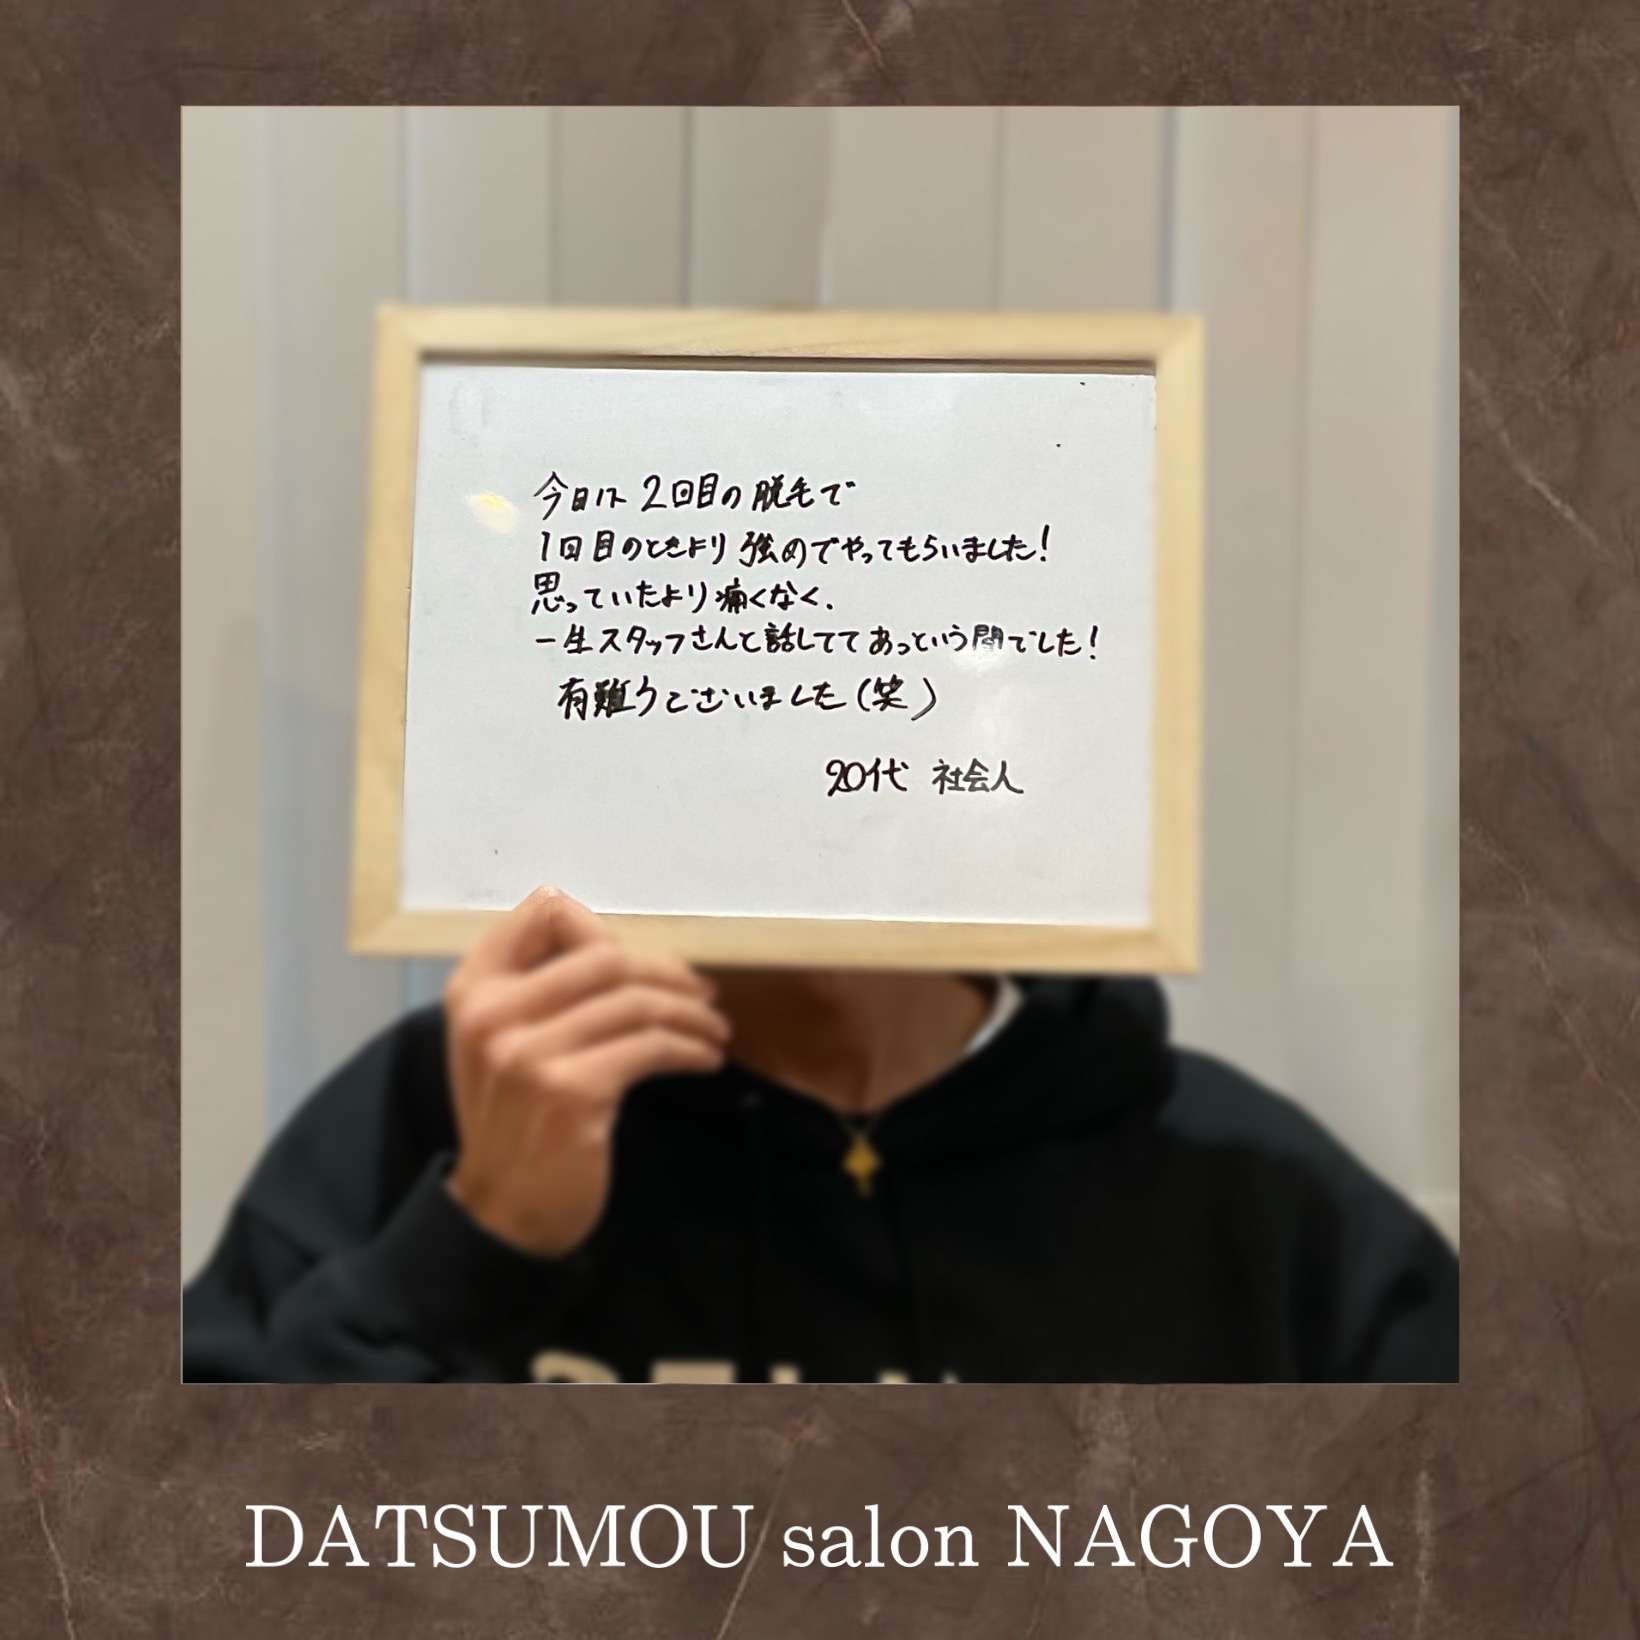 メンズ脱毛DATSUMOU salon NAGOYAにご来店頂いているお客様のヒゲ脱毛効果とは！？